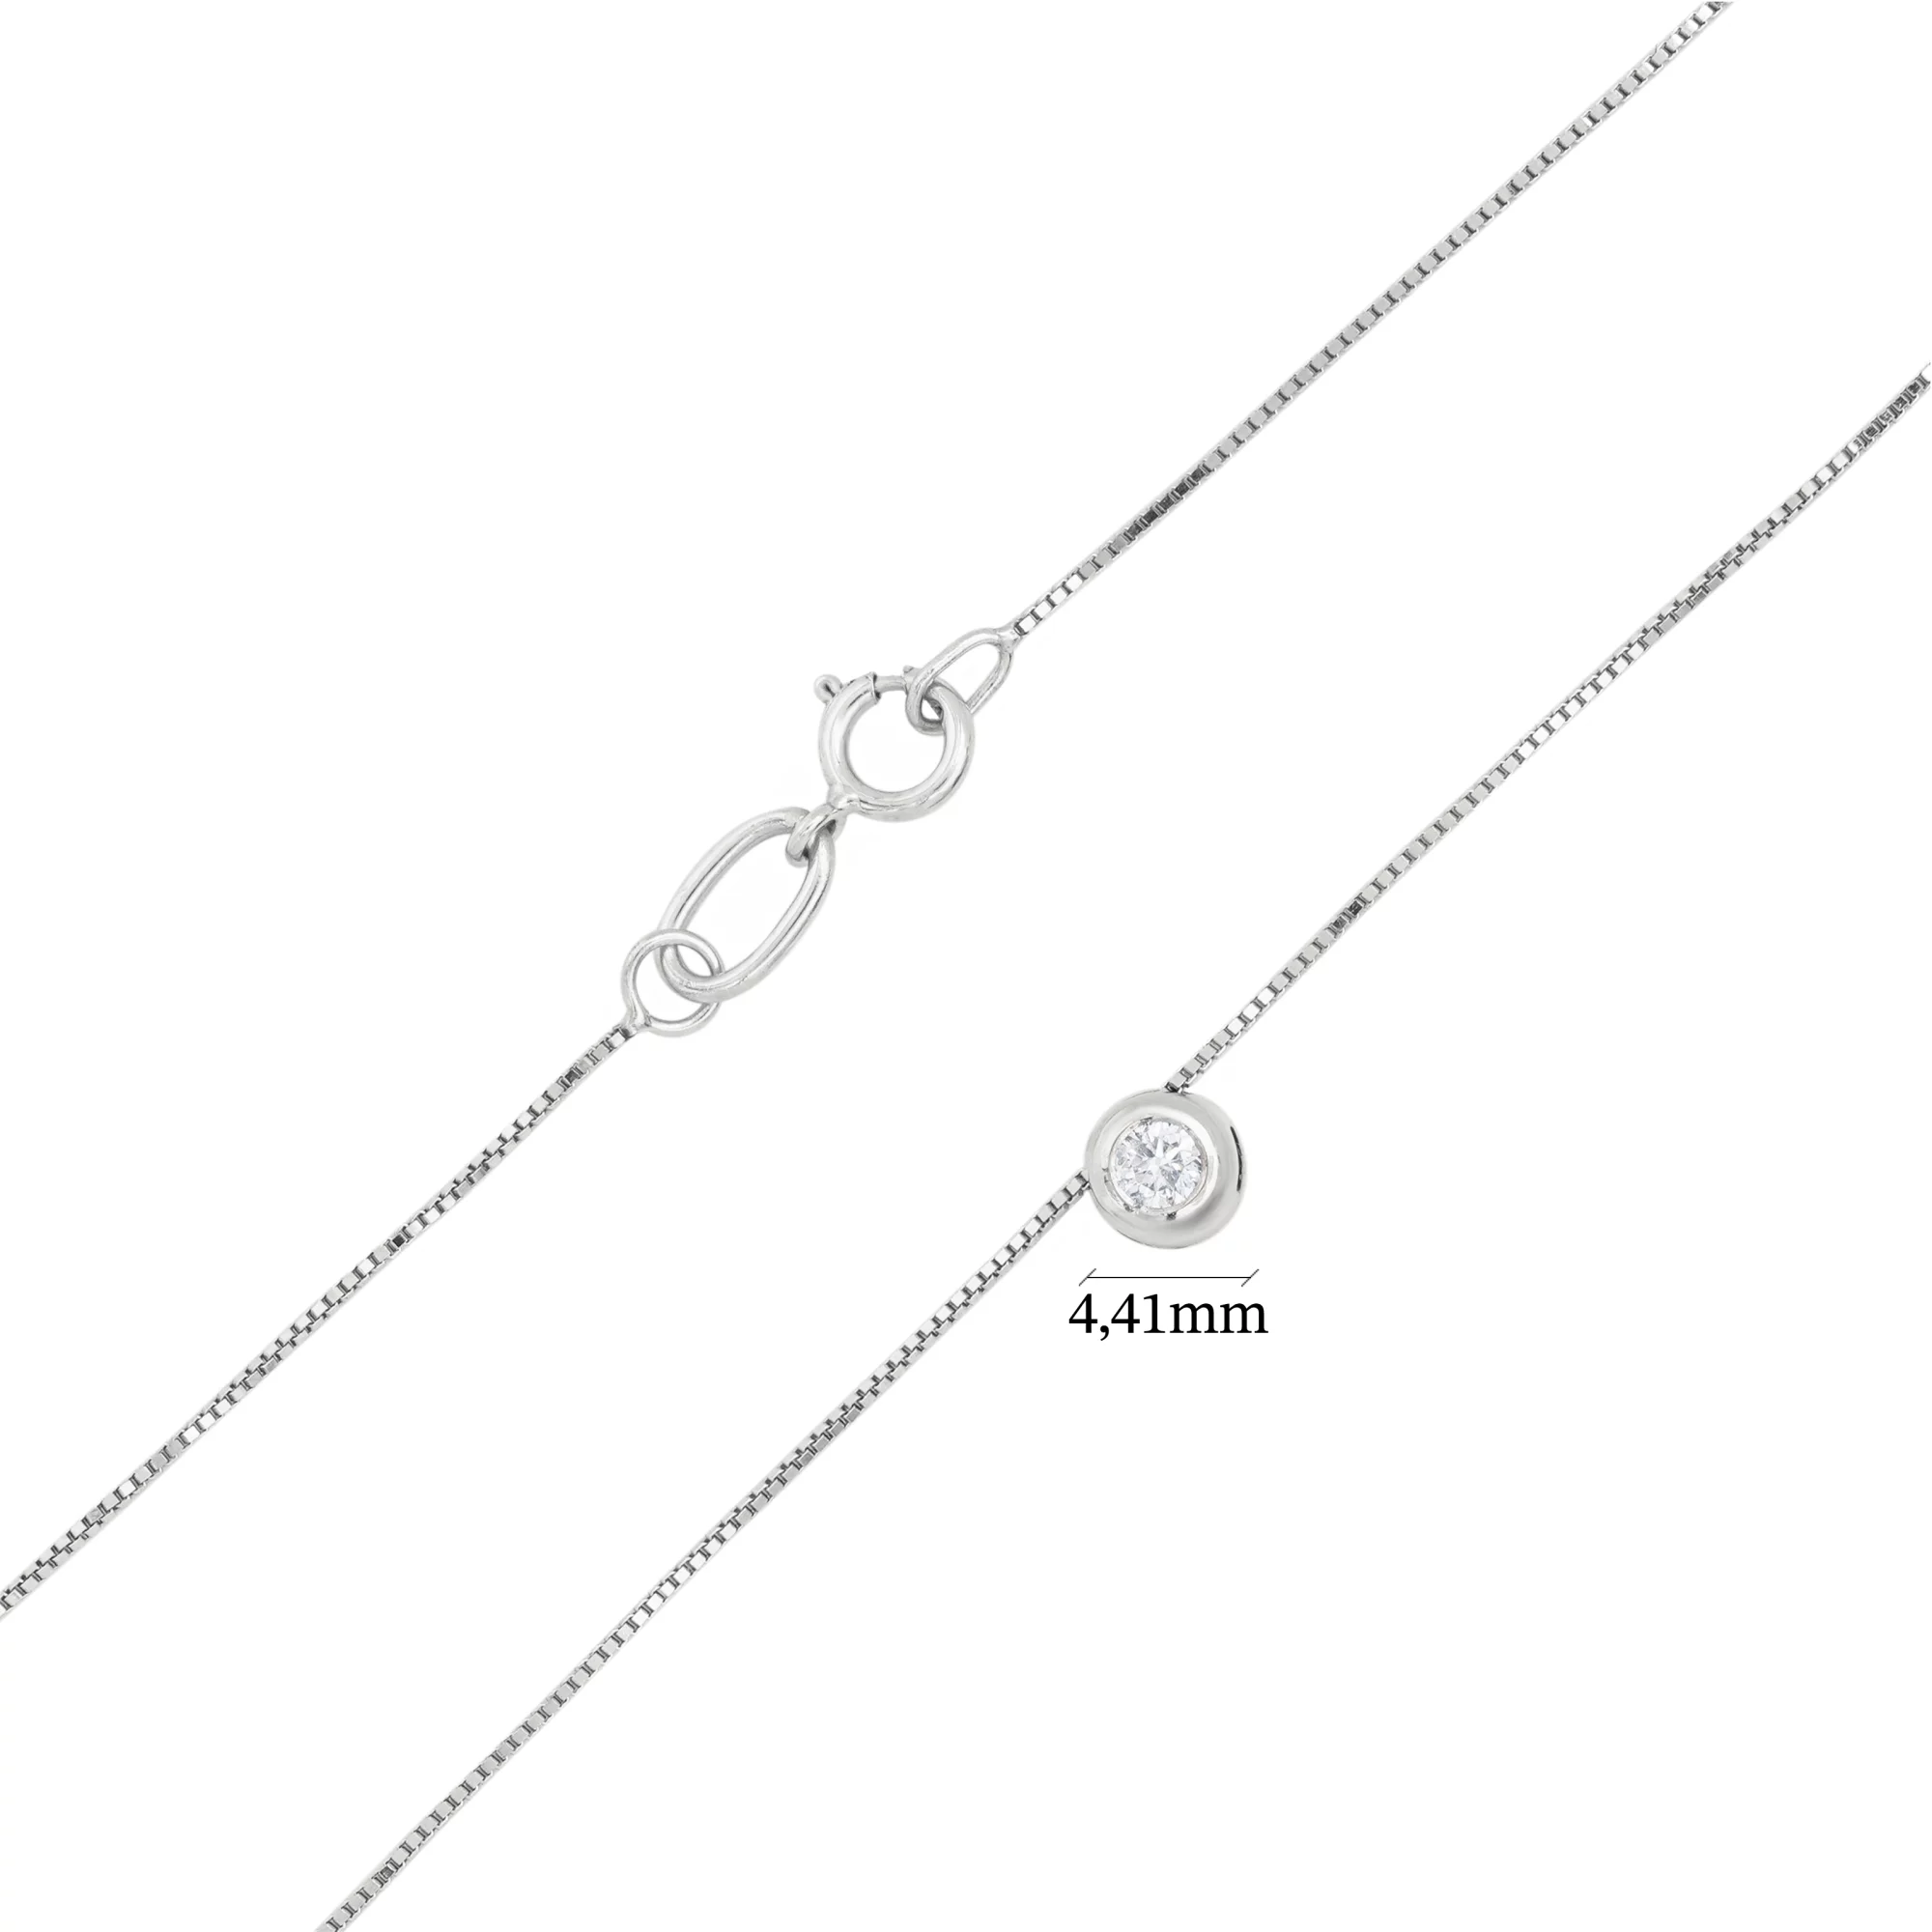 Минималистическа цепочка с подвеской с бриллиантом из белого золота - 1644643 – изображение 5